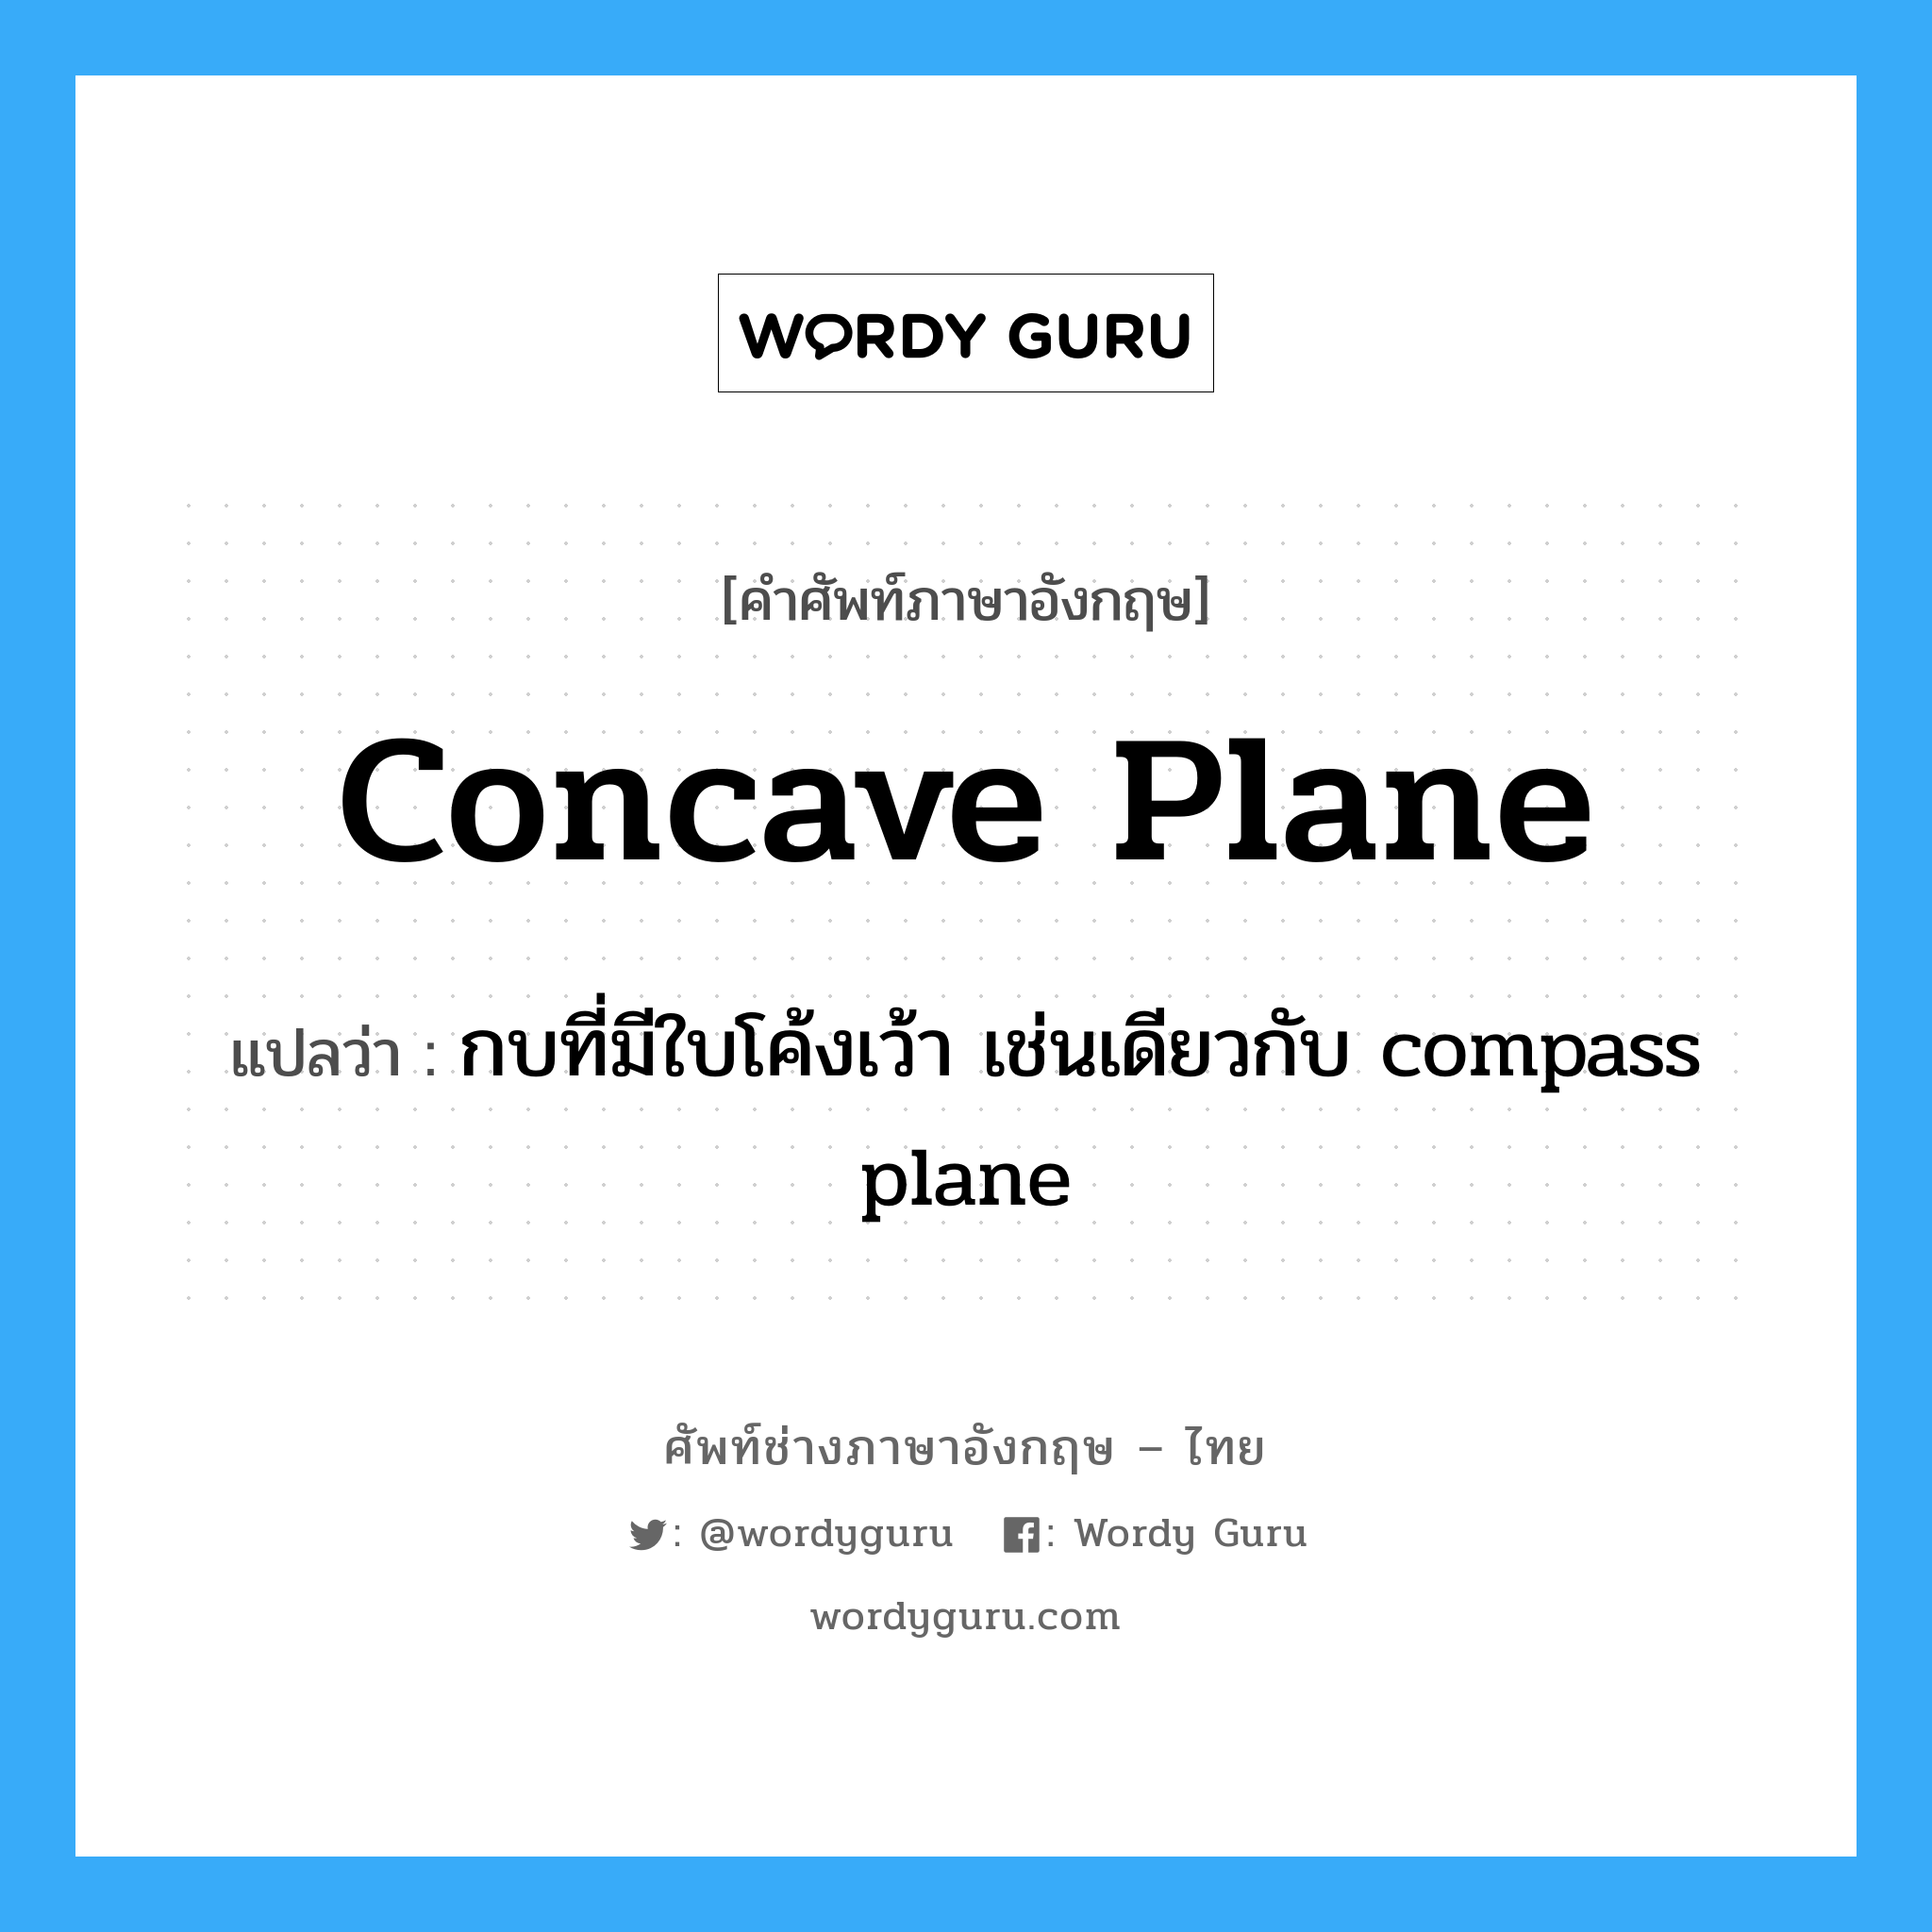 กบที่มีใบโค้งเว้า เช่นเดียวกับ compass plane ภาษาอังกฤษ?, คำศัพท์ช่างภาษาอังกฤษ - ไทย กบที่มีใบโค้งเว้า เช่นเดียวกับ compass plane คำศัพท์ภาษาอังกฤษ กบที่มีใบโค้งเว้า เช่นเดียวกับ compass plane แปลว่า concave plane